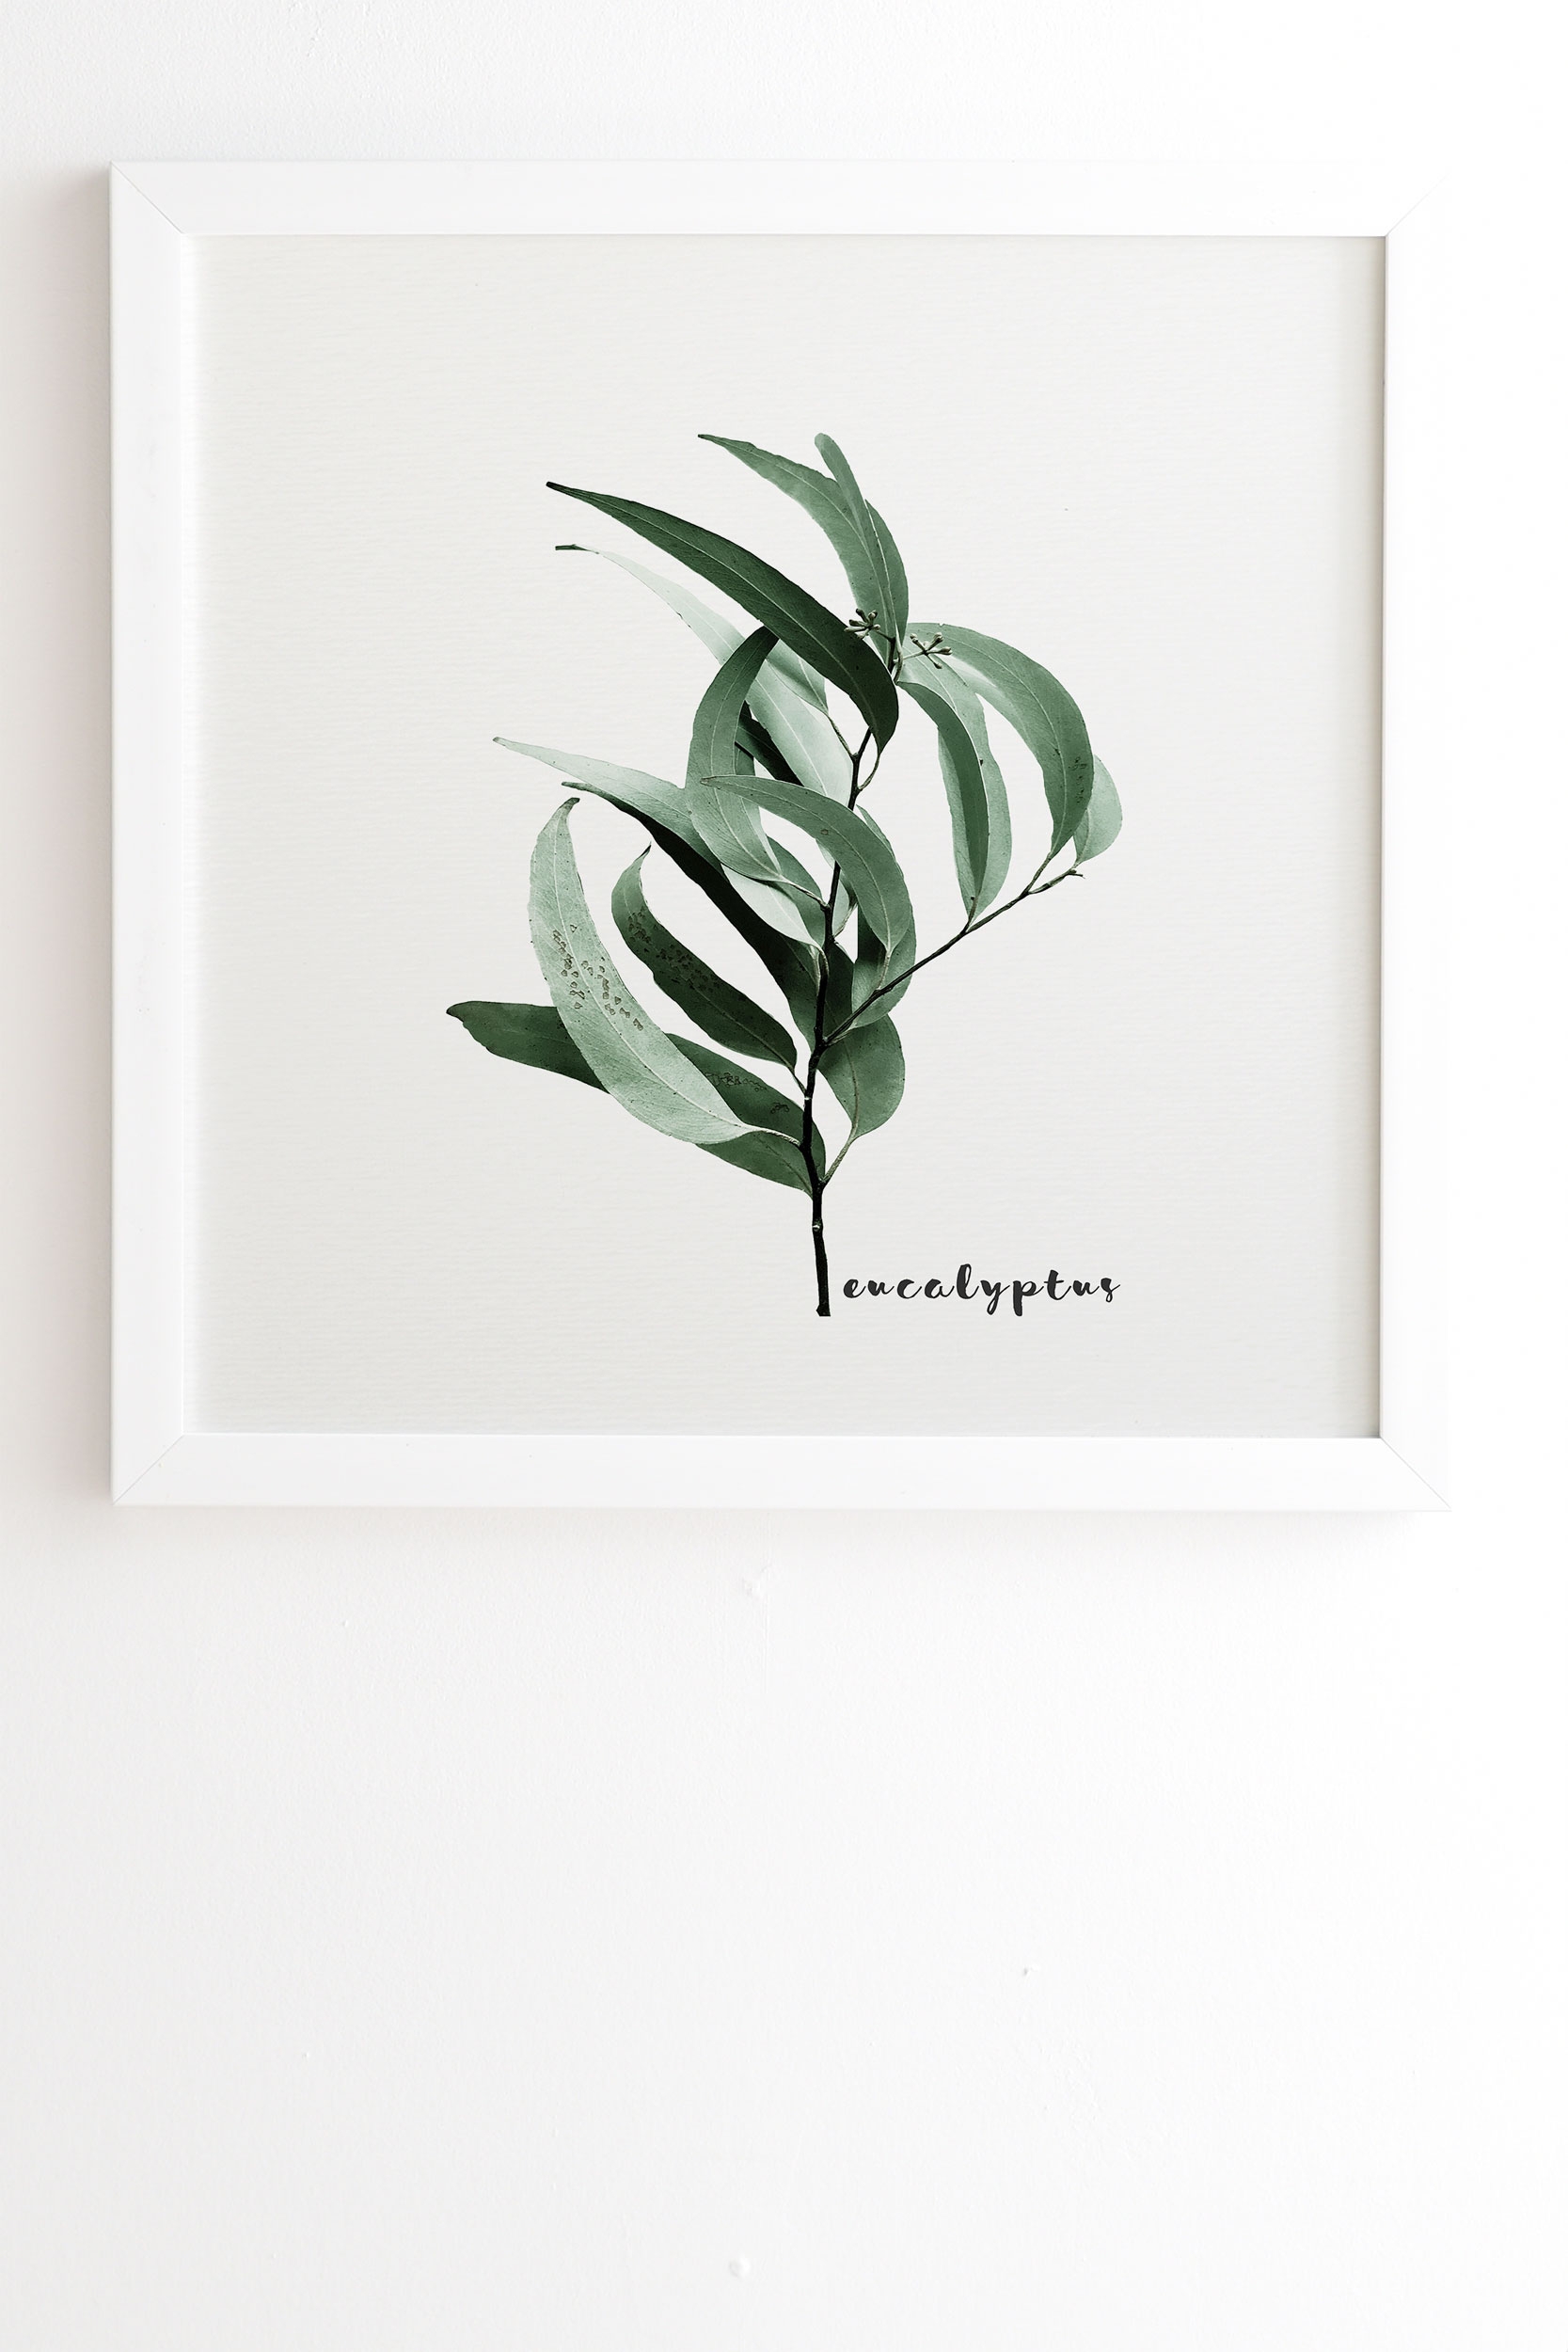 Eucalyptus Australian Gum Tree by Gale Switzer - Framed Wall Art Basic White 20" x 20" - Image 1